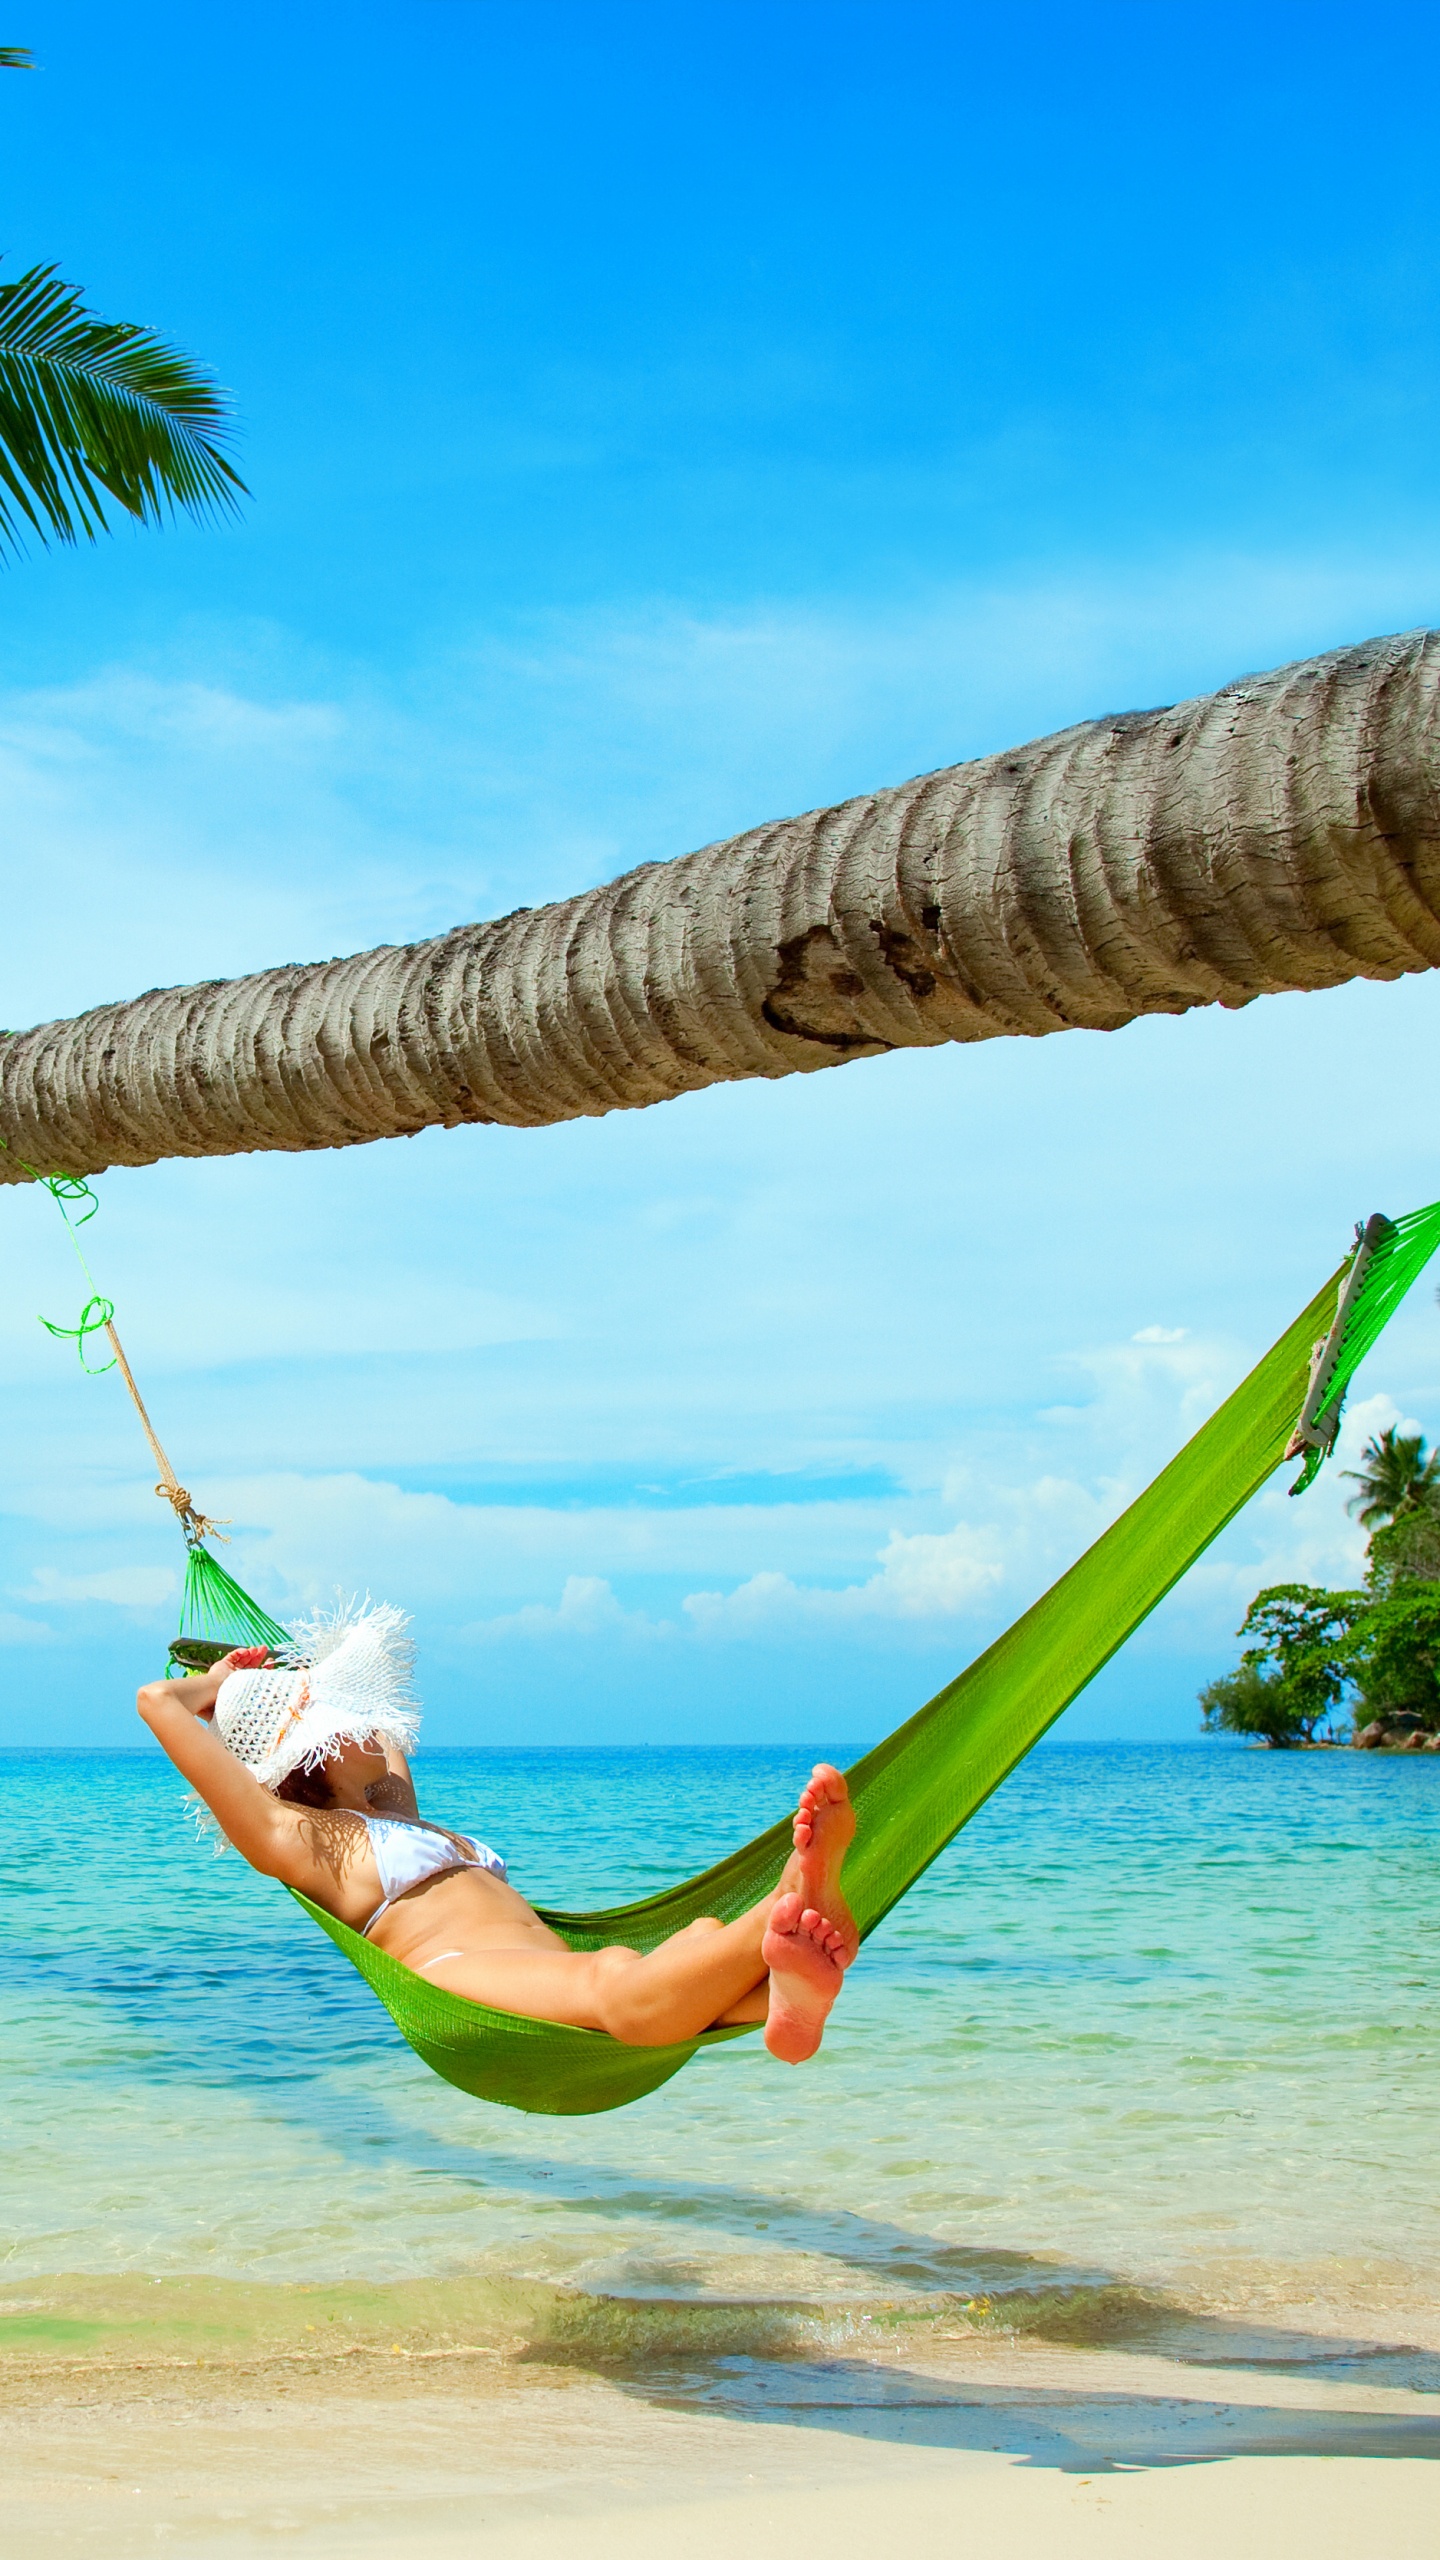 吊床, 大海, 热带地区, 度假, 加勒比 壁纸 1440x2560 允许